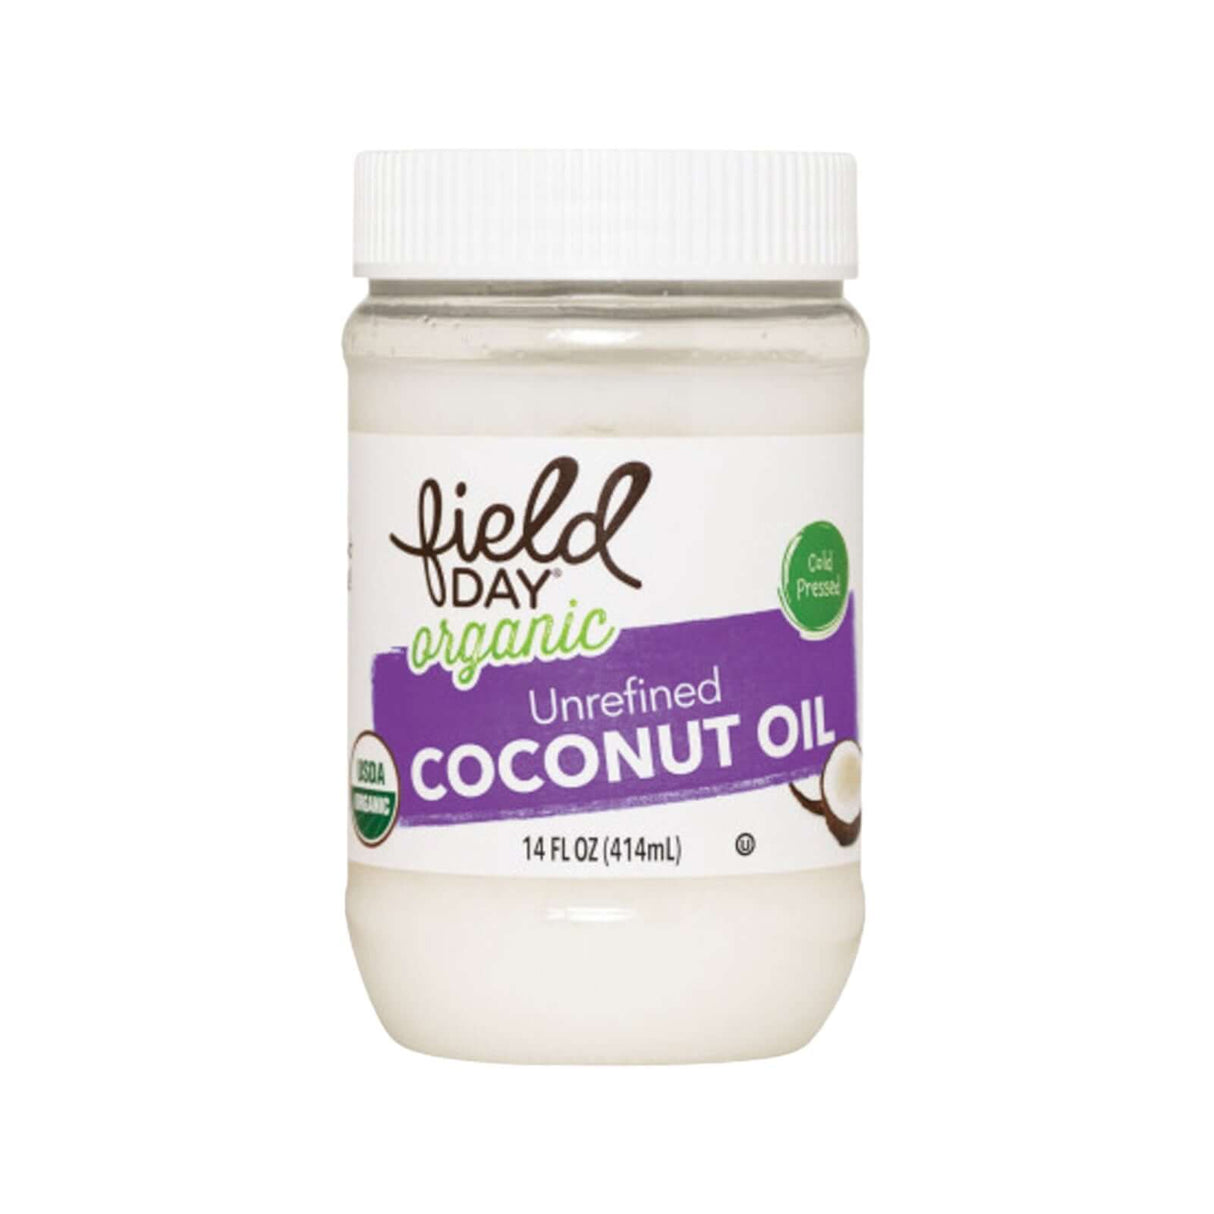 Field Day Organic Unrefined Coconut Oil